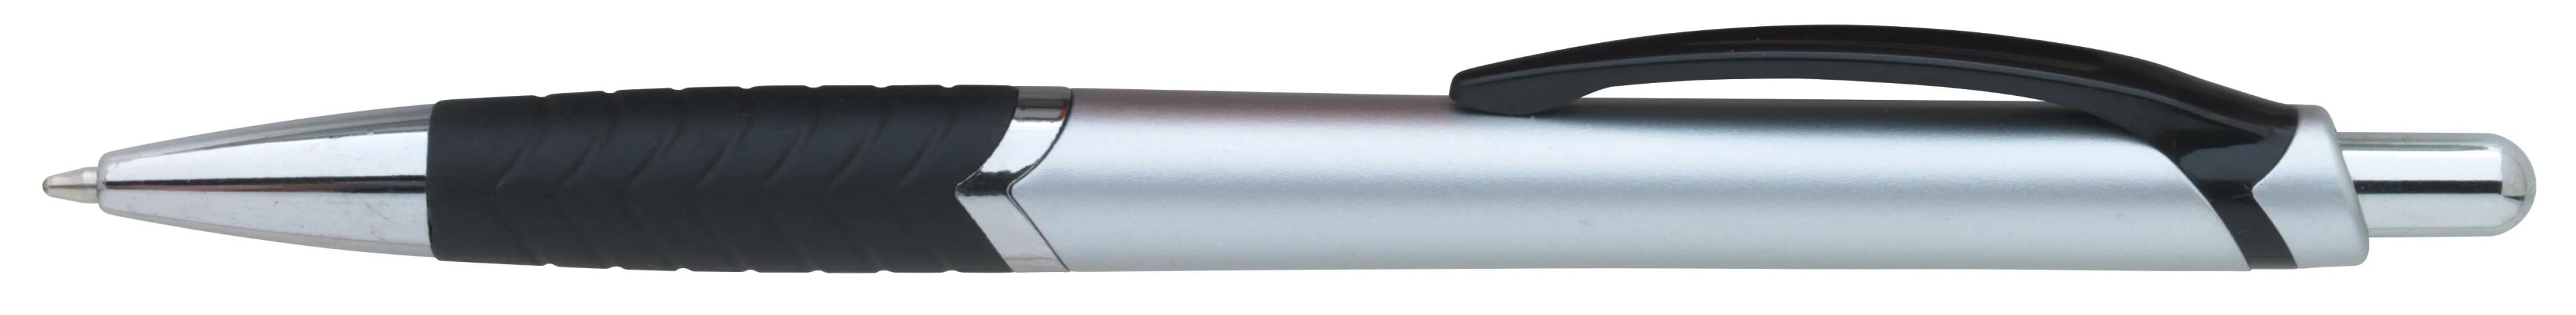 Arrow Metallic Pen 30 of 43